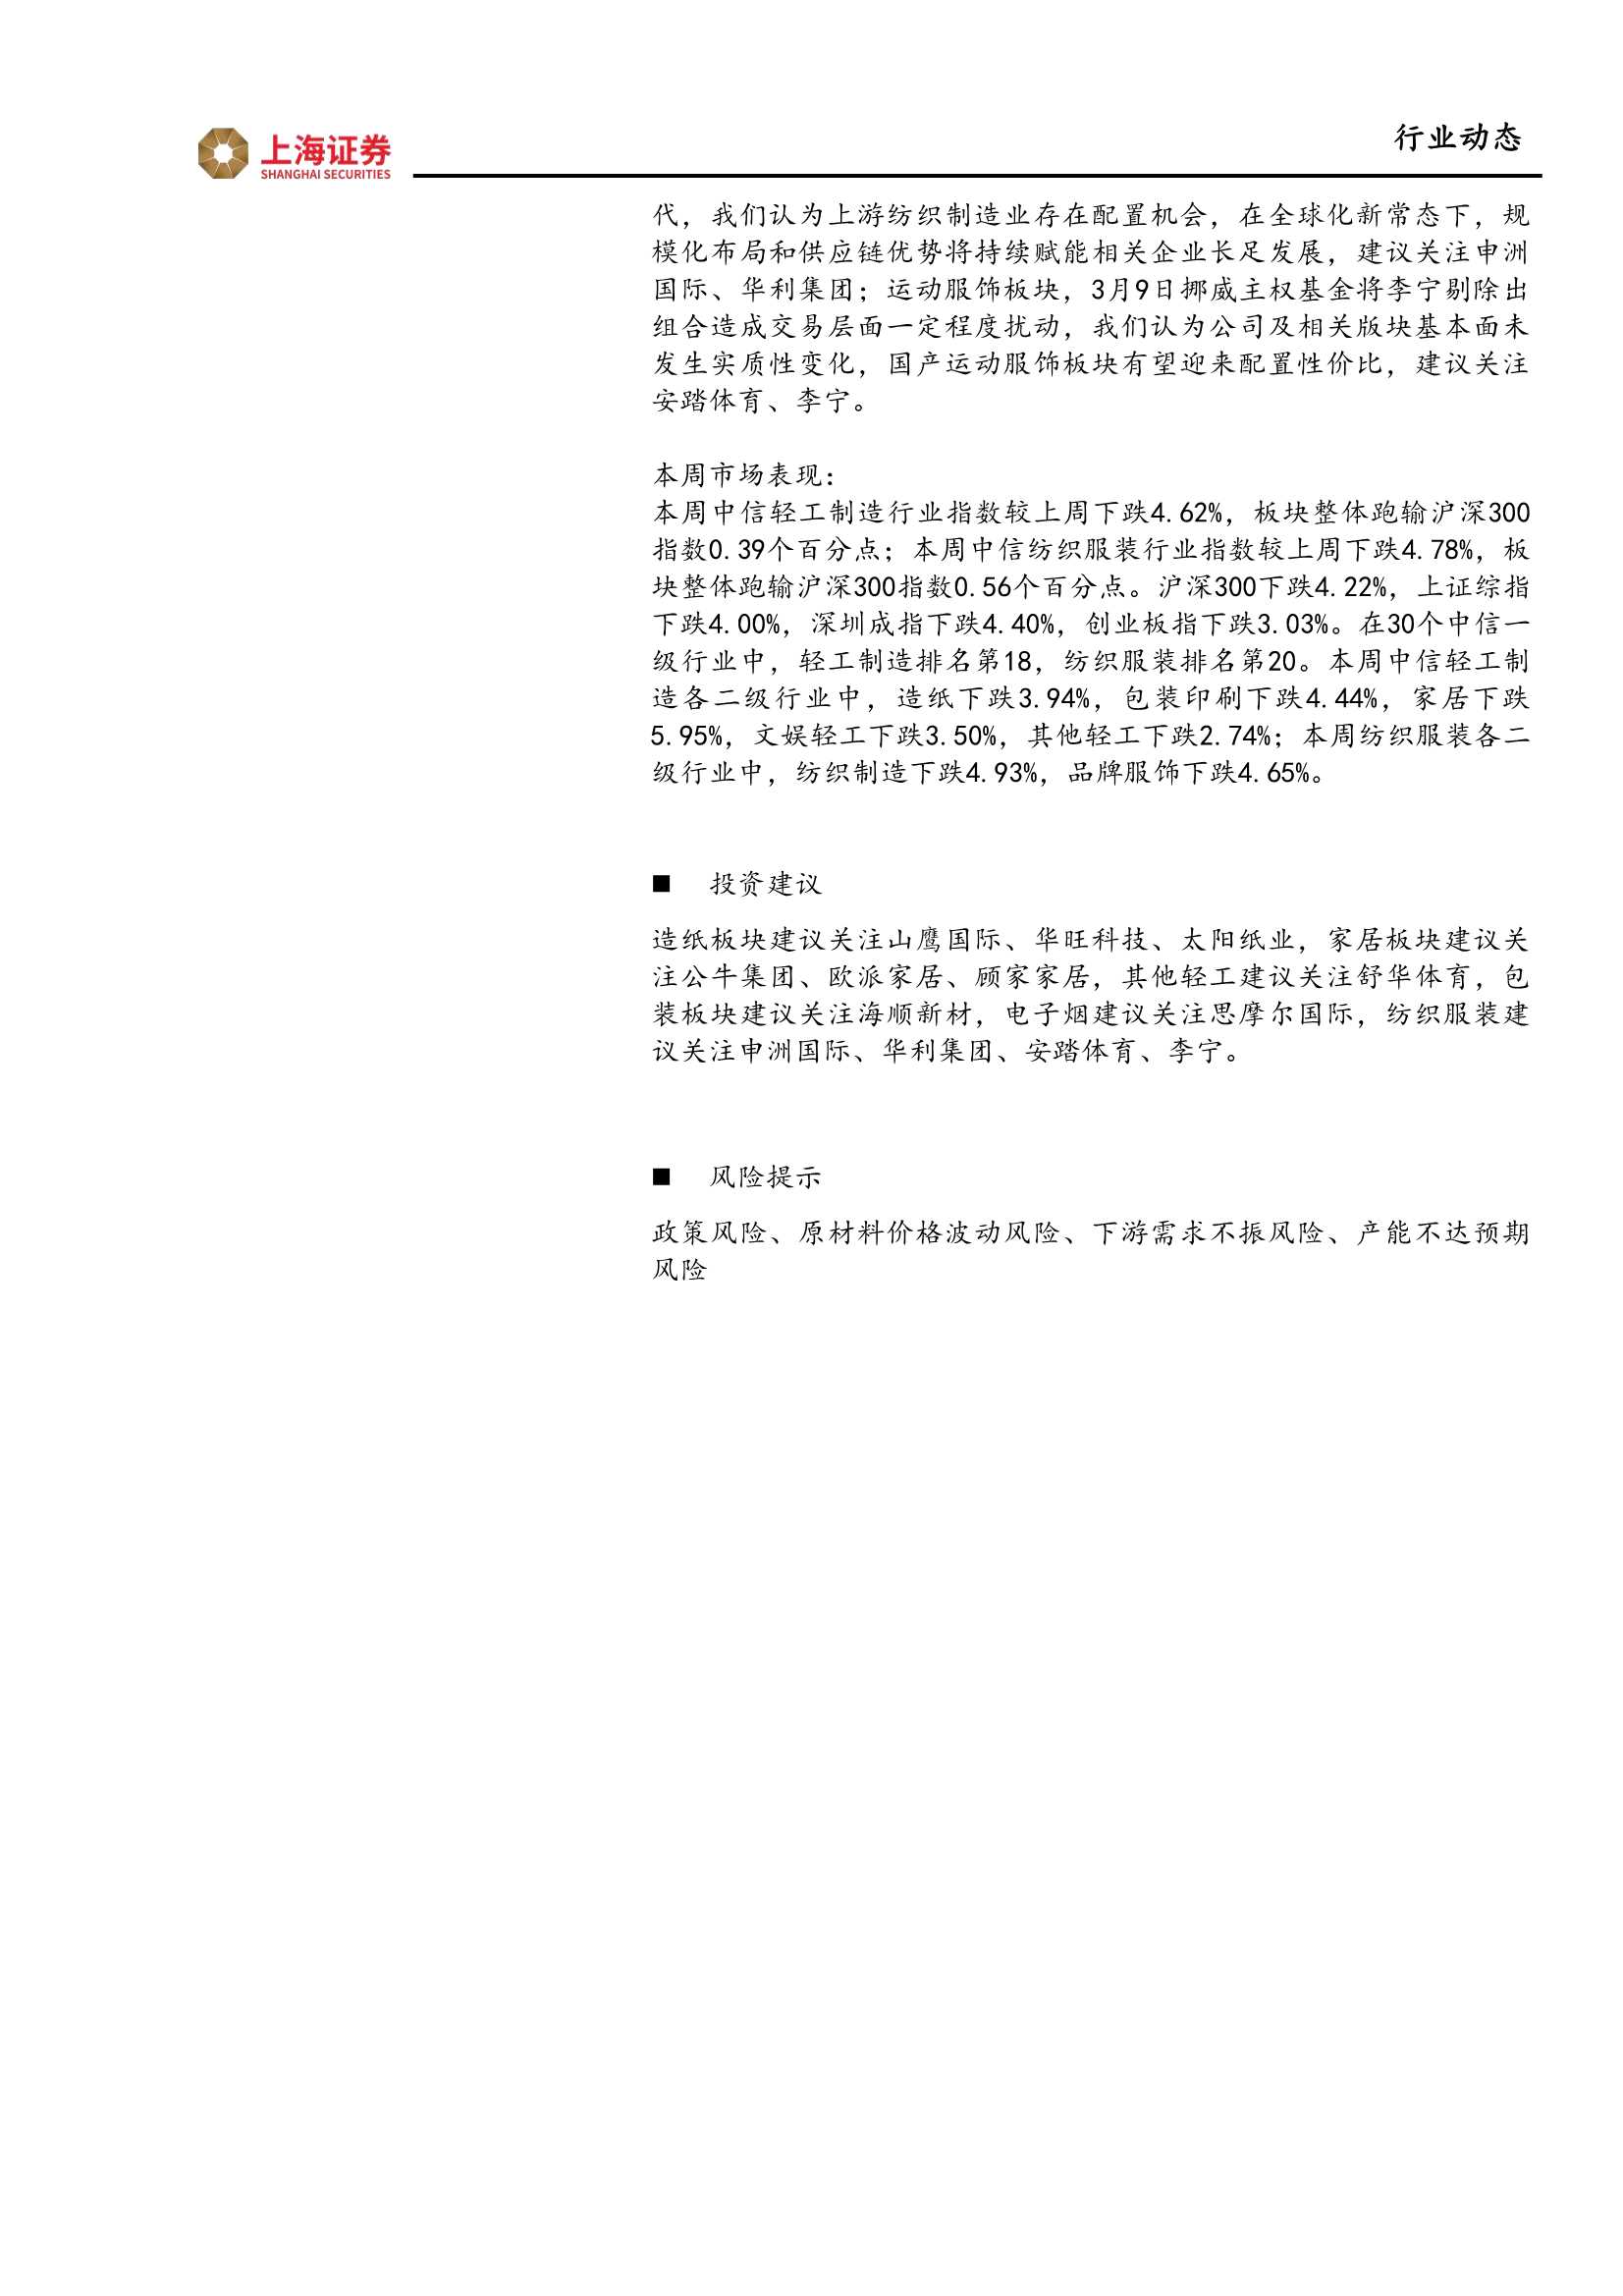 上海证券-轻工纺服行业周报：电子烟国内监管超预期，持续关注纸浆上涨行情-20220314-20页